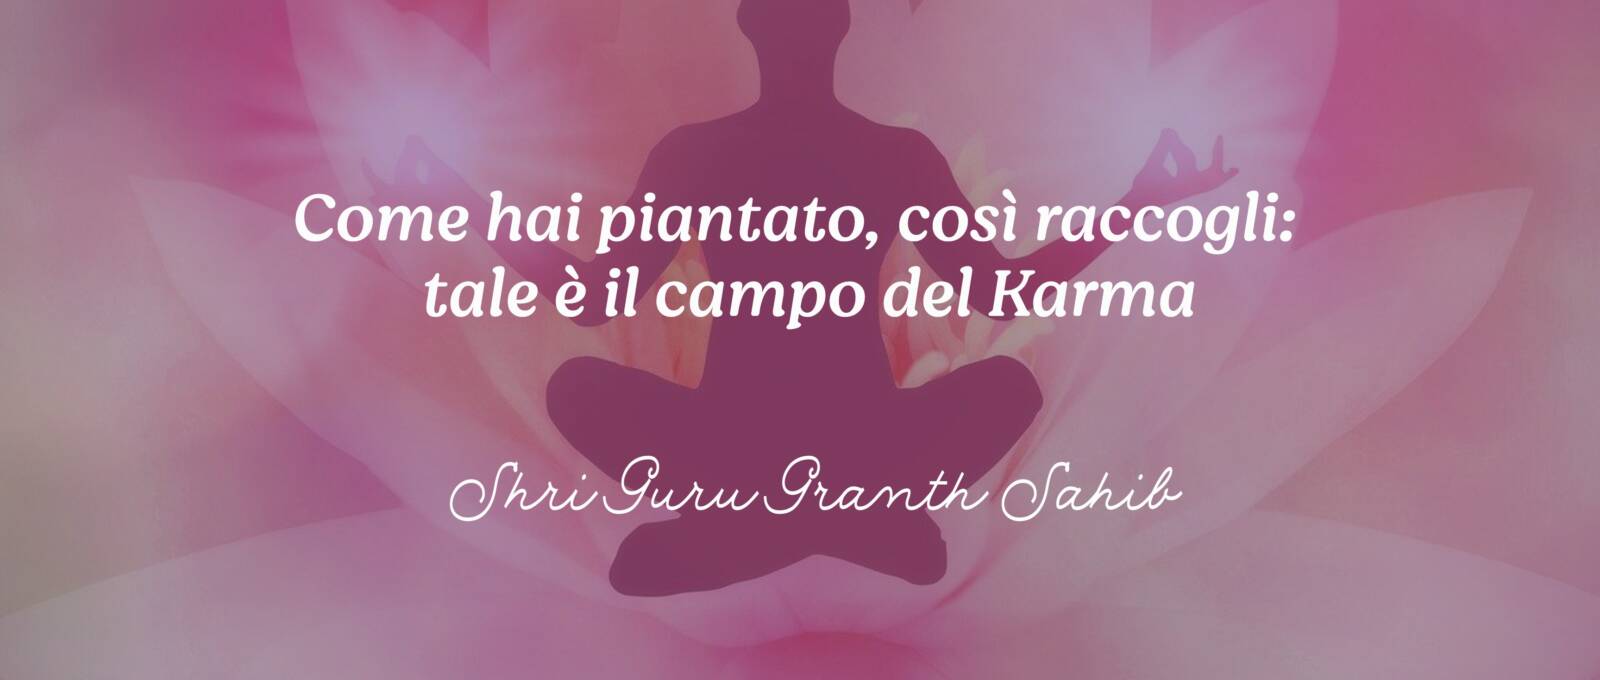 frasi karma Shri Guru Granth Sahib